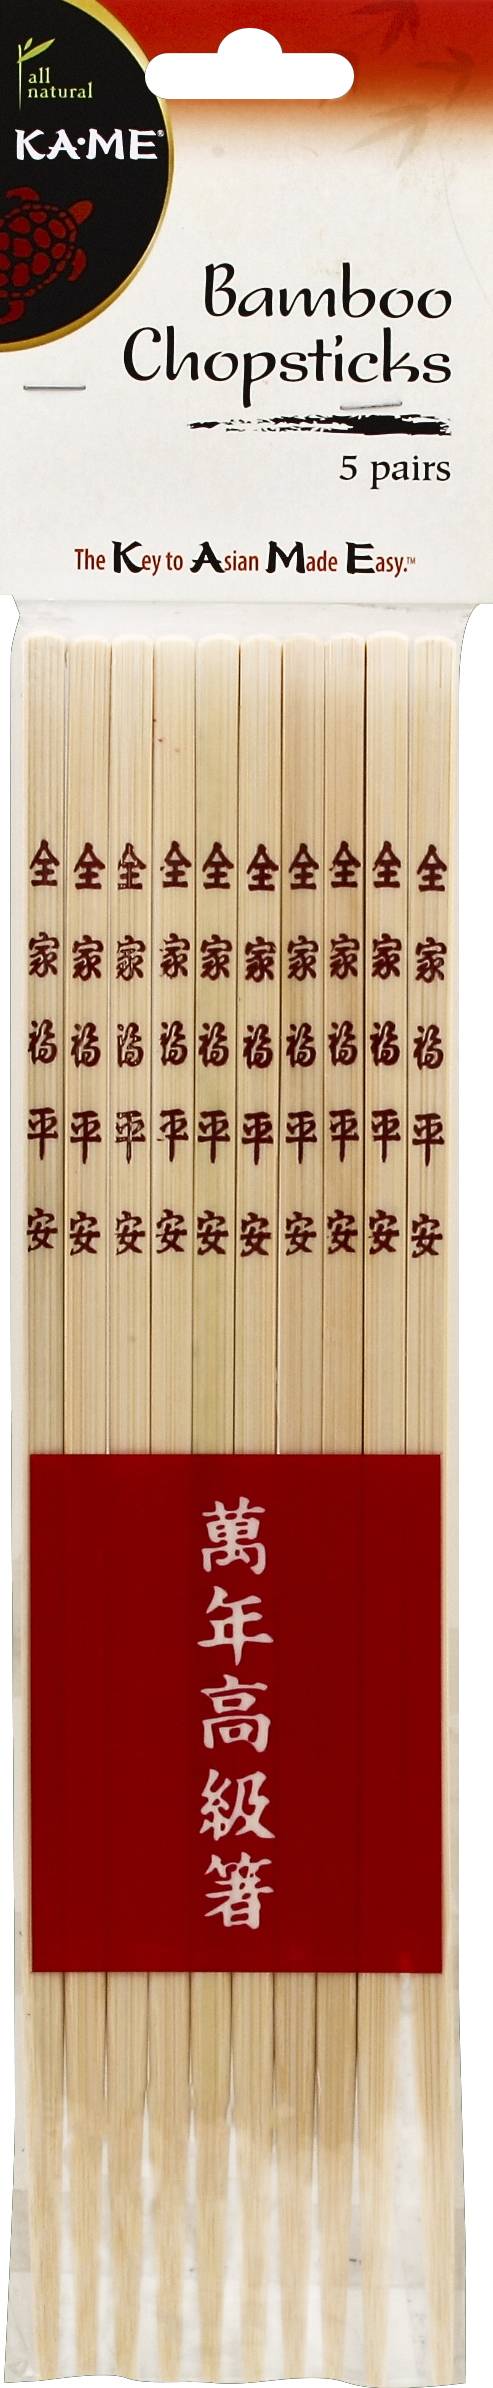 Ka-Me Bamboo Chopsticks (5 ct)